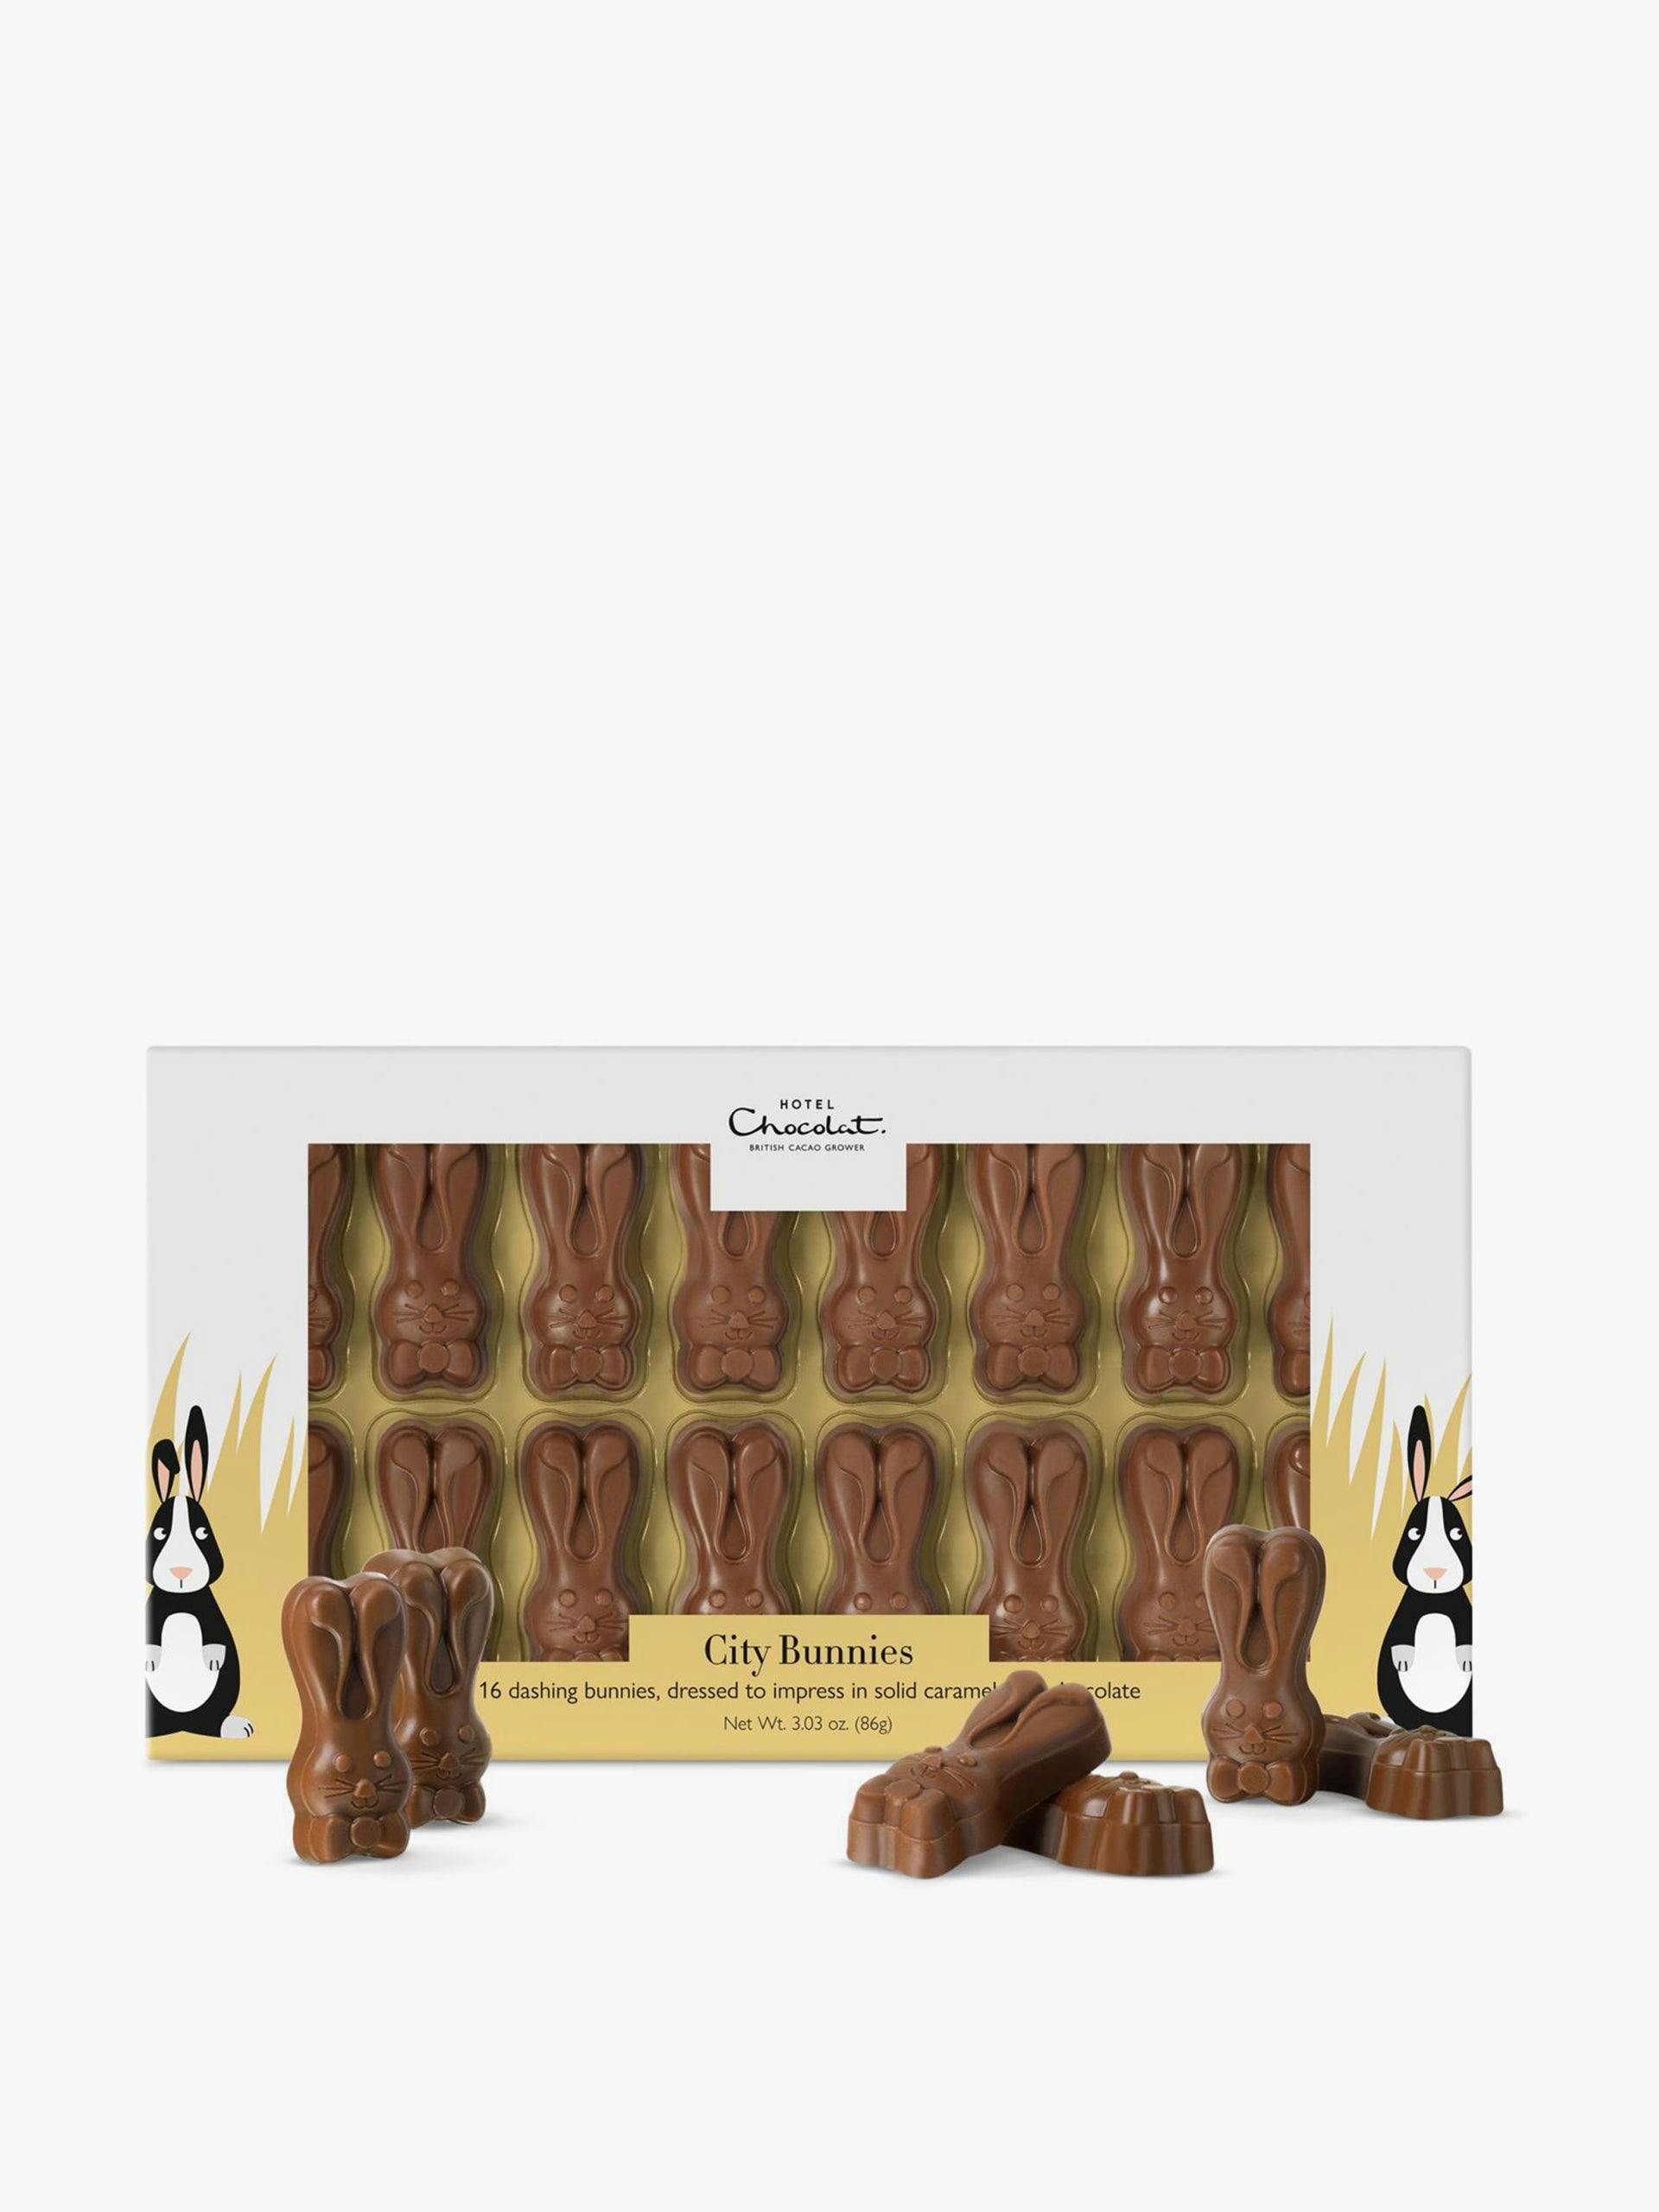 Caramel chocolate bunnies